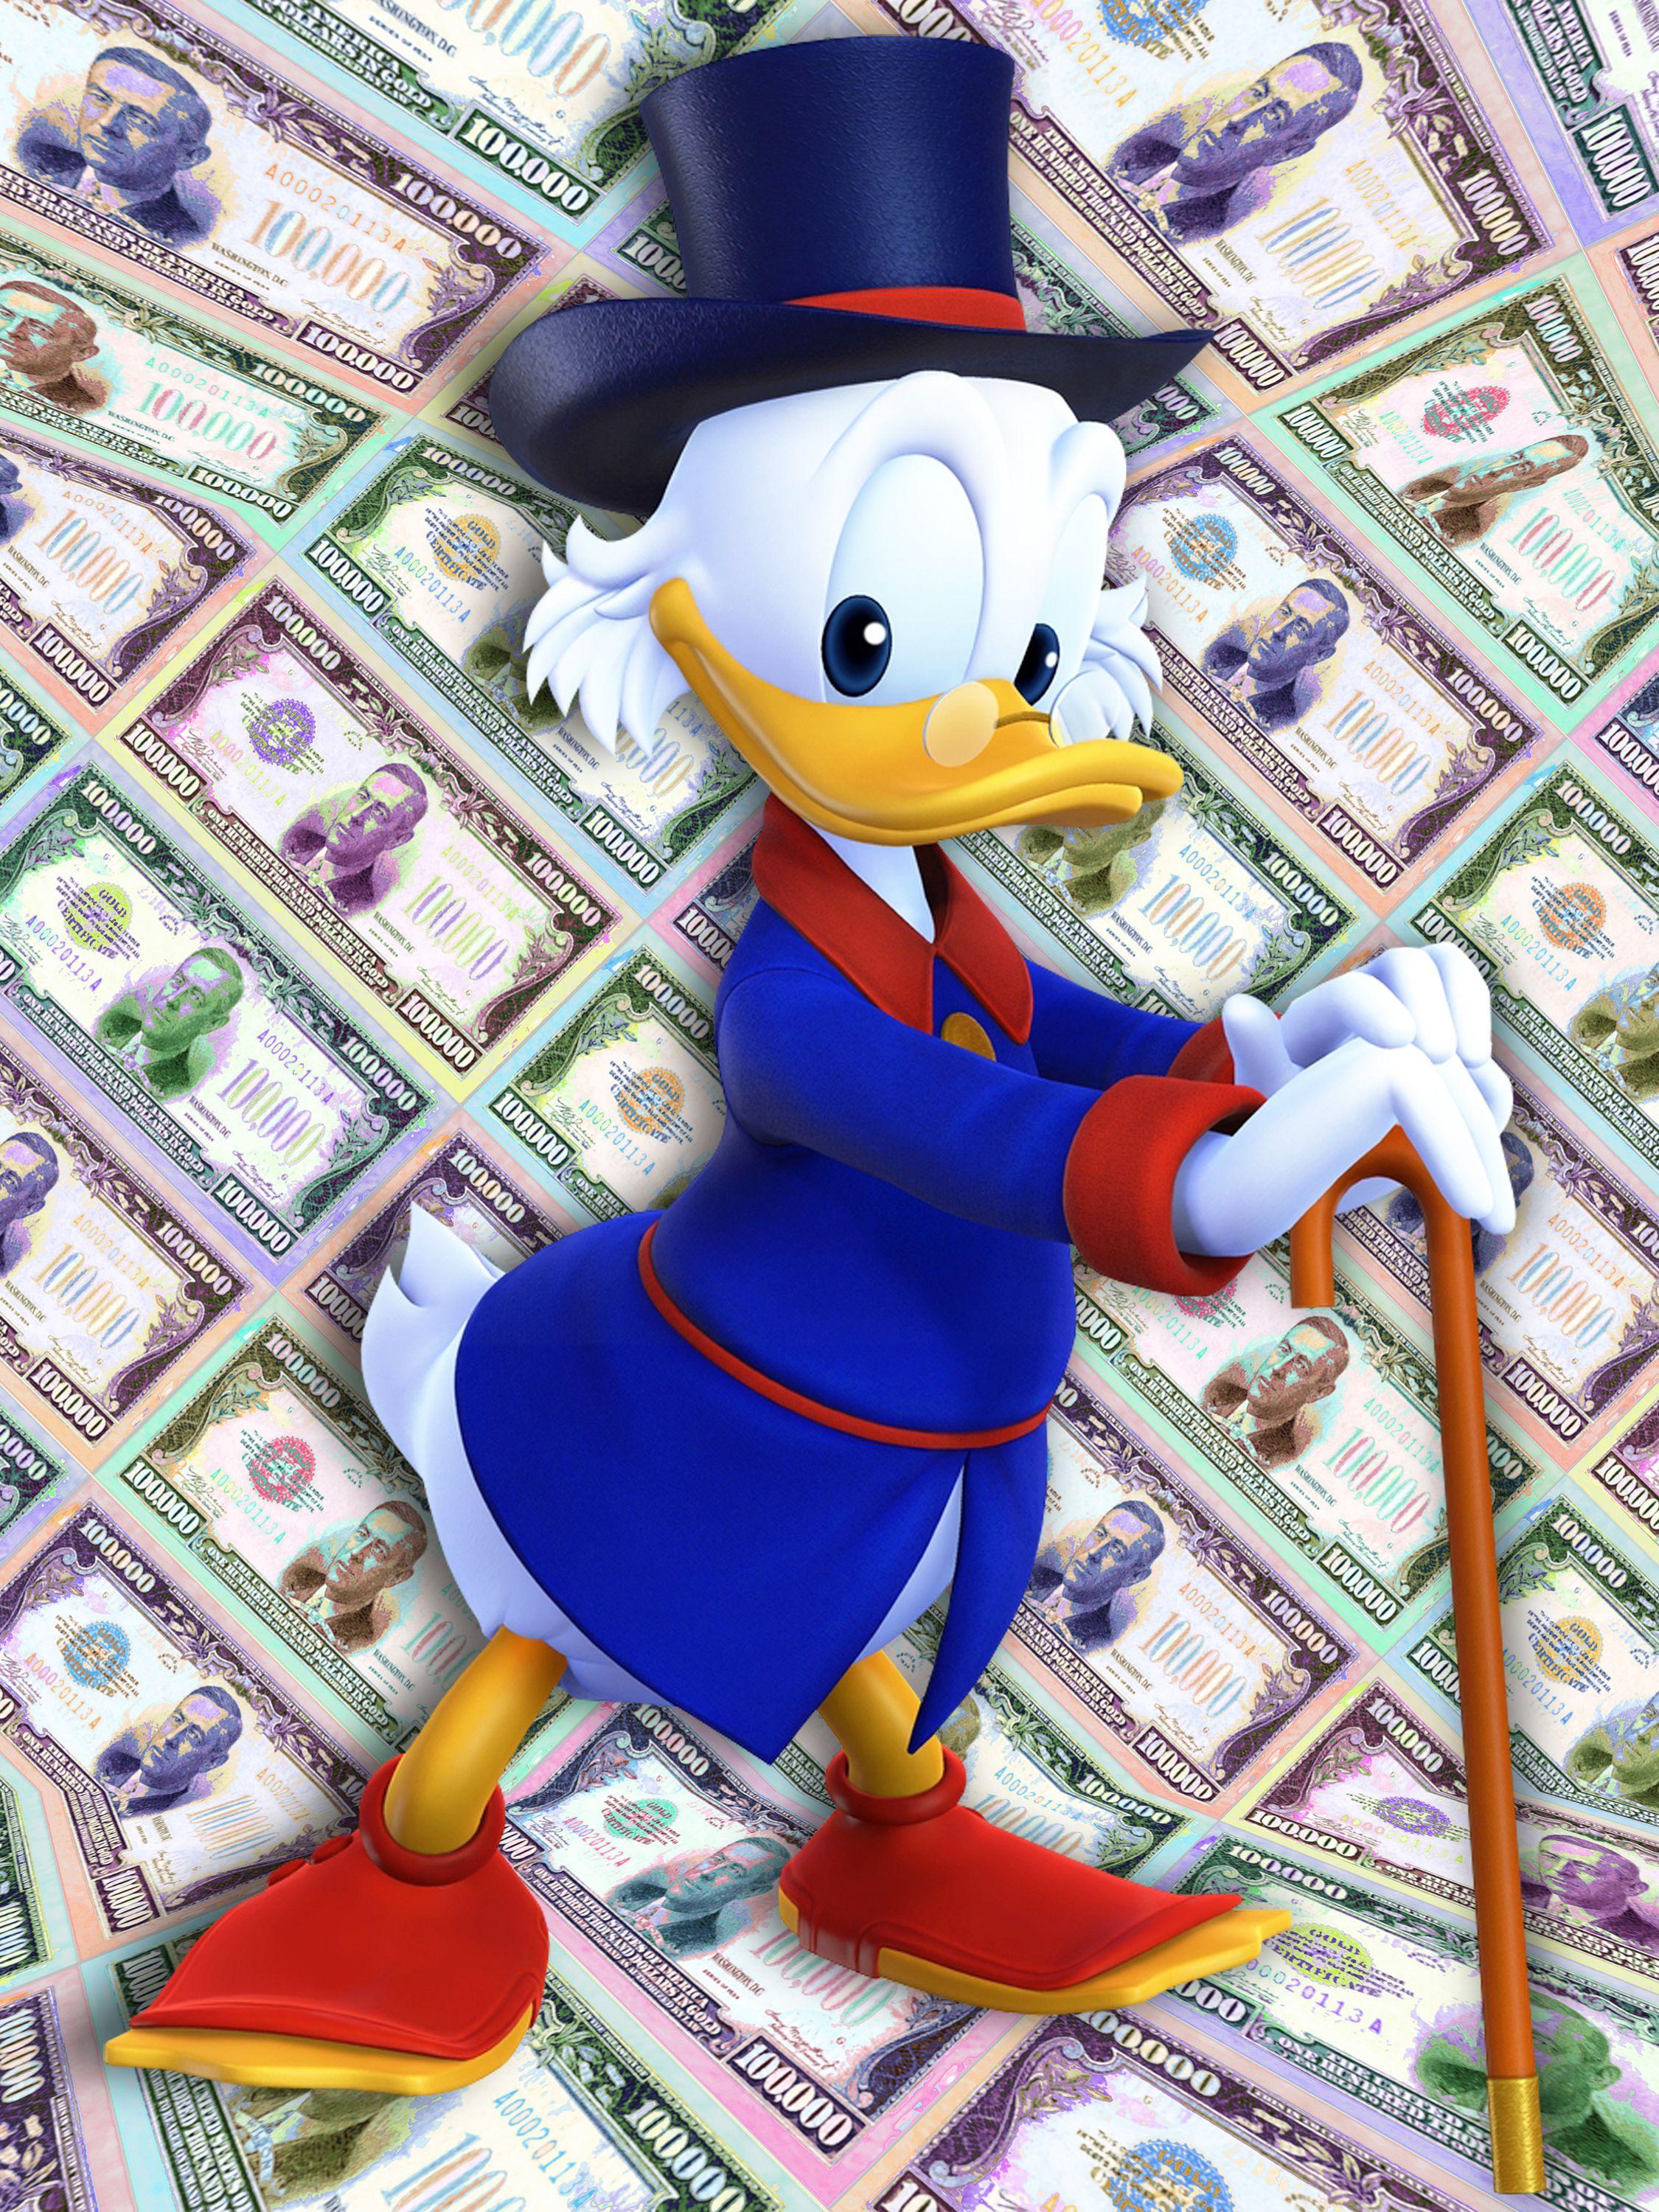 Scrooge McDuck Geld Gangsta Rich Cash Bills Pop 1, Mixed Media auf Leinwand – Mixed Media Art von Tony Rubino